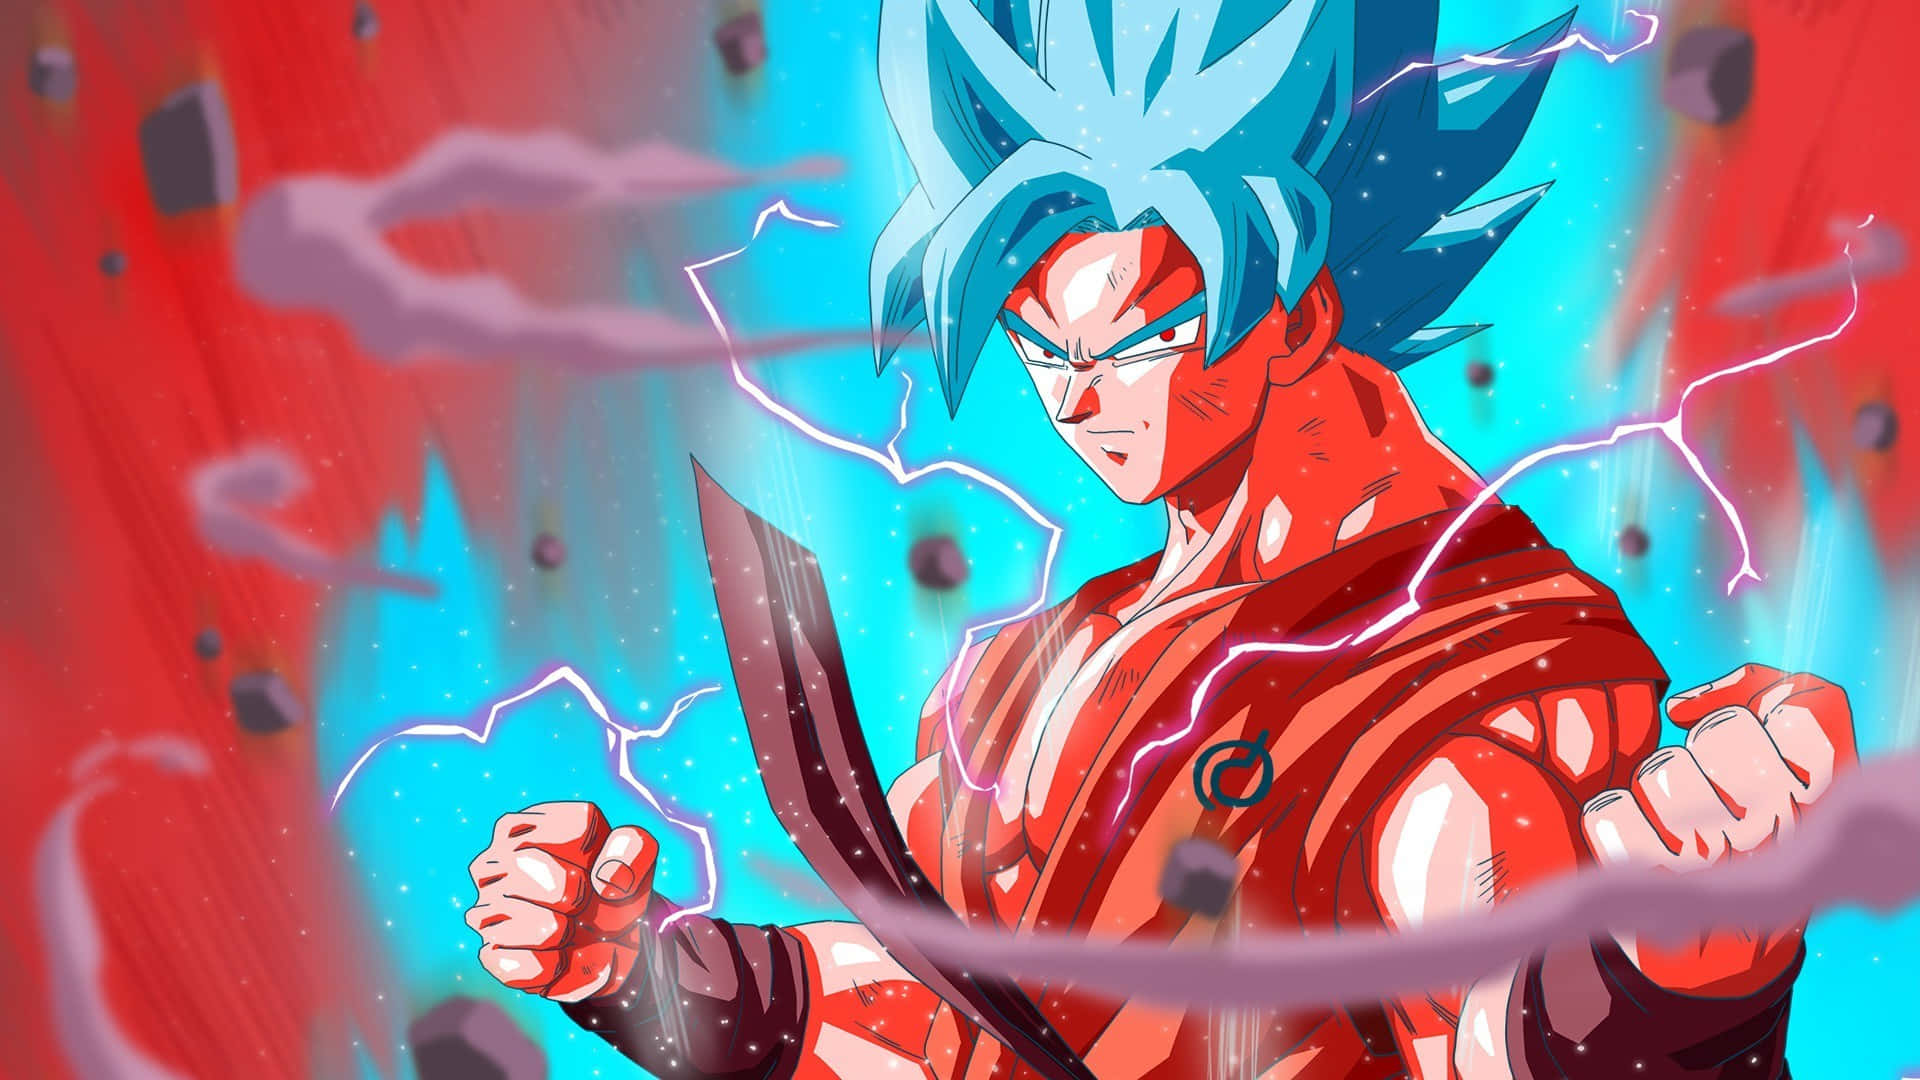 Gokuförvandlas Till Super Saiyan 4. Wallpaper